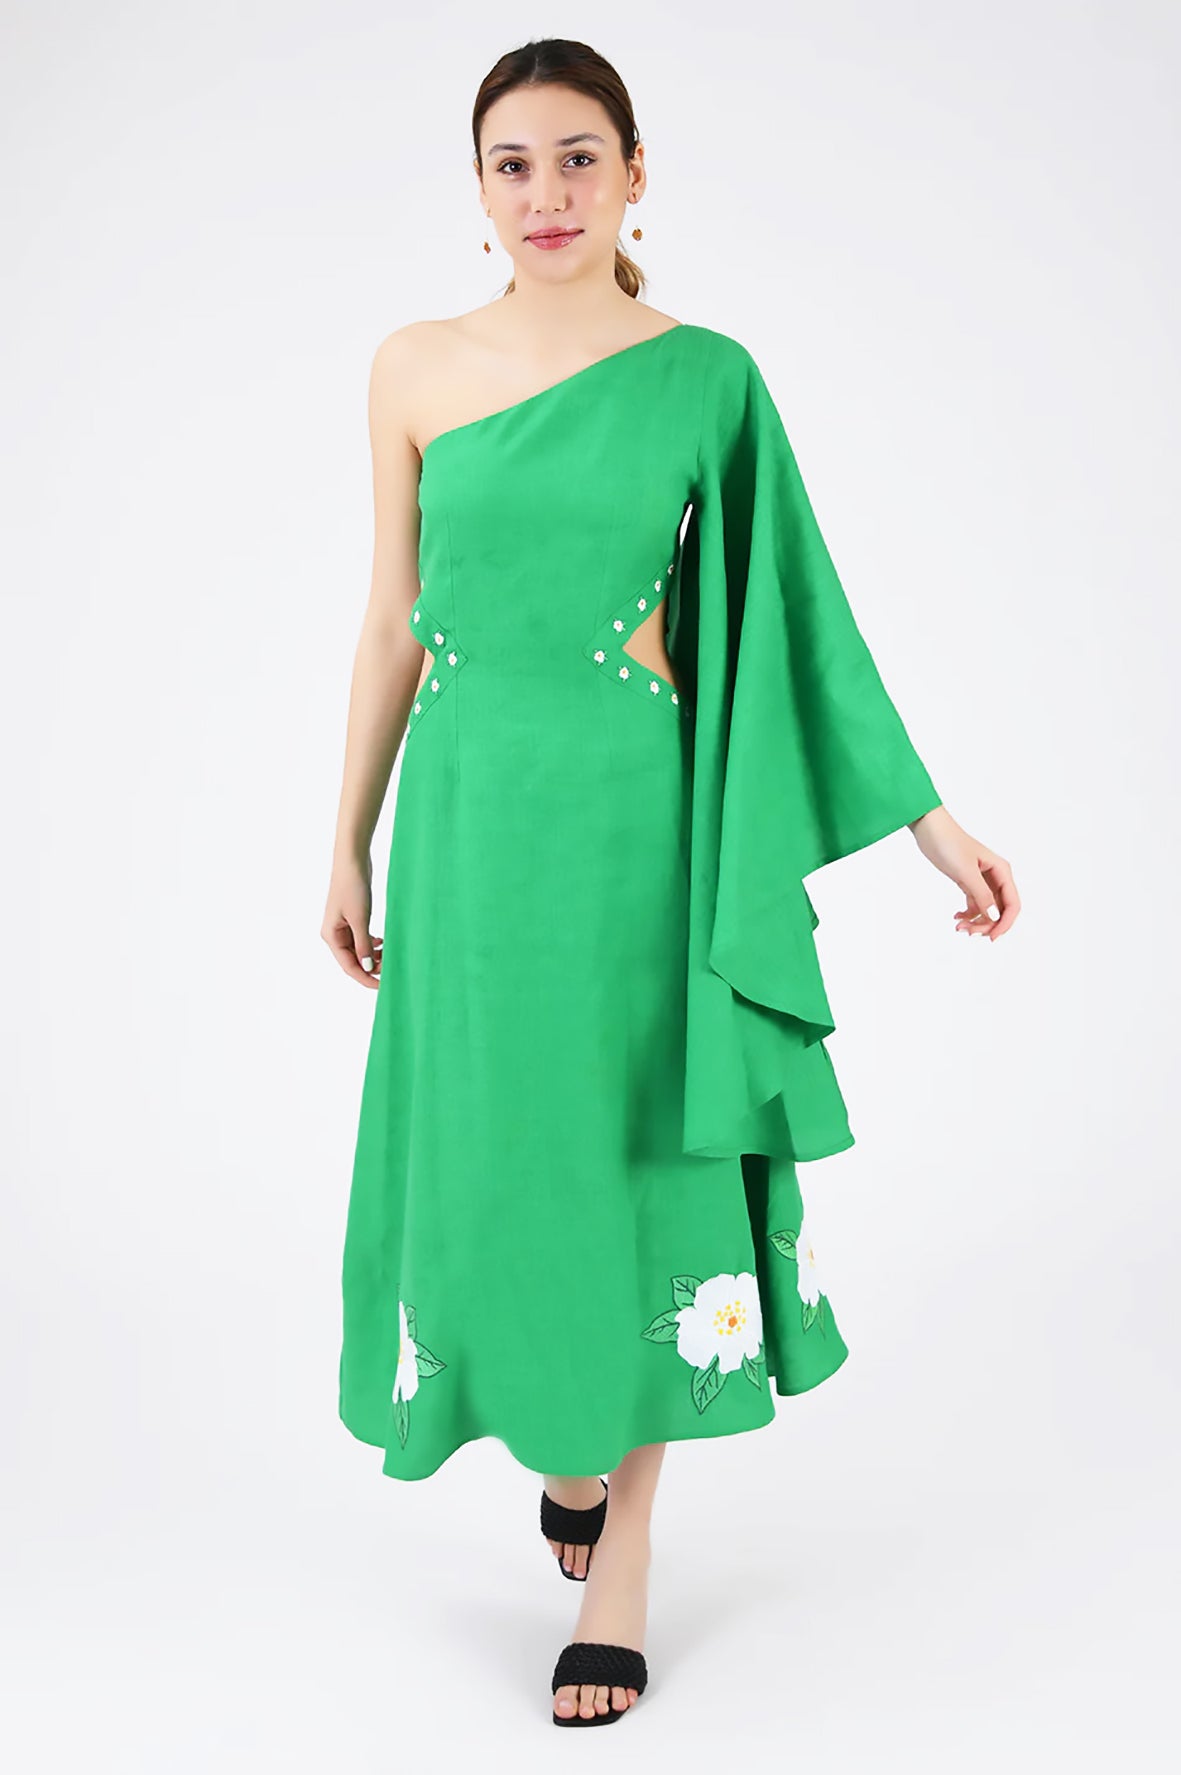 Narma Dress (Wanga Collection) in Kelly Green